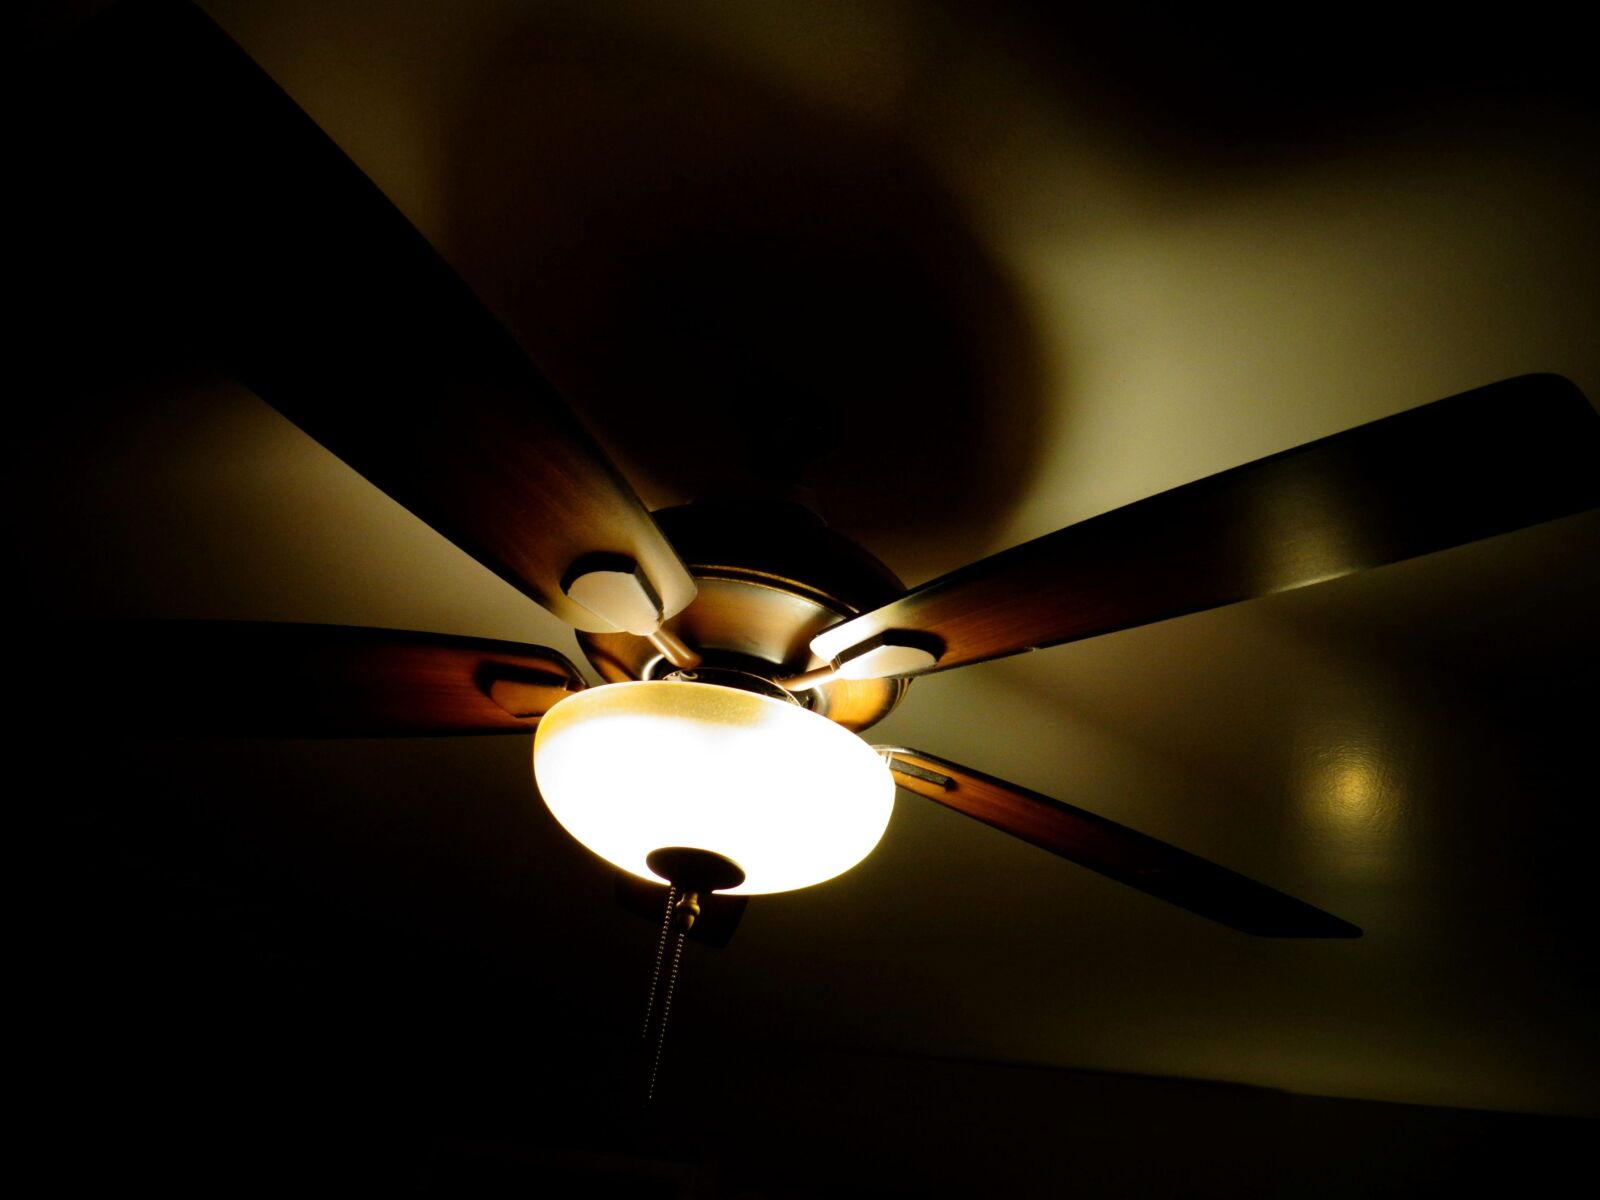 Sony Cyber-shot DSC-W690 sample photo. Ceiling fan, light, darkness photography